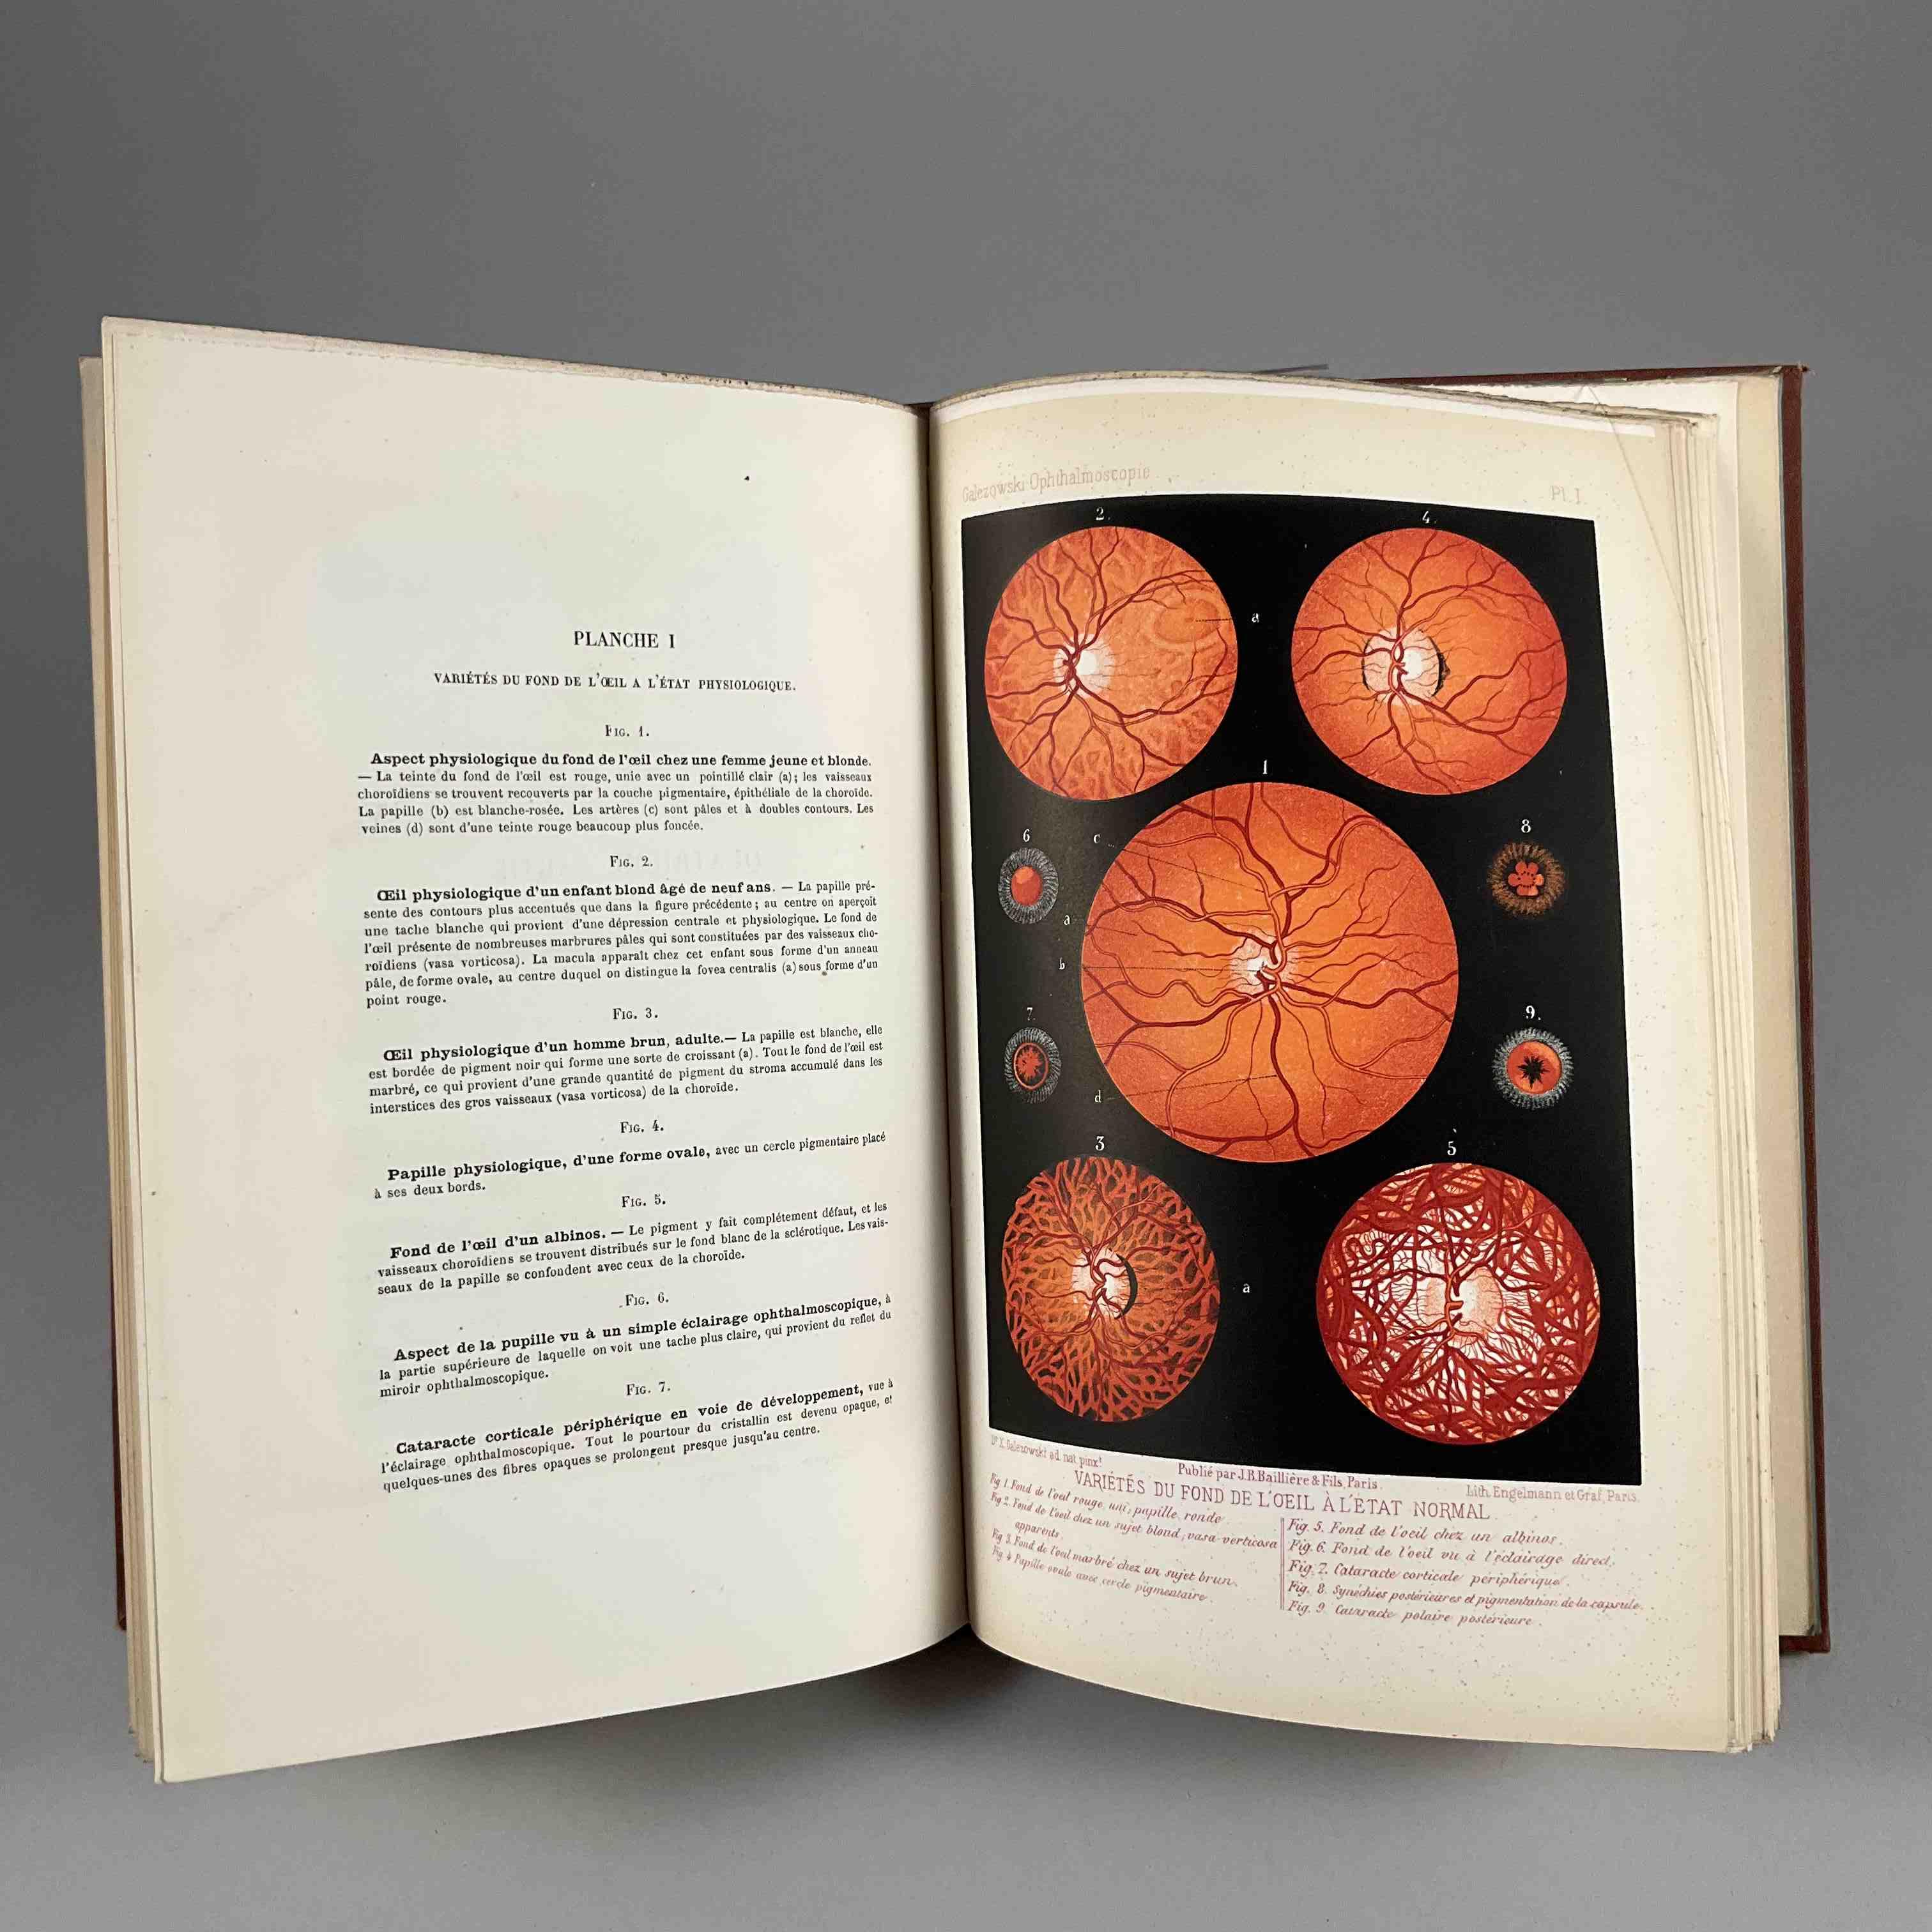 [Ophtalmologie] X Galezowski, Traité iconographique d ophthalmoscopie.
Paris, Baillière, 1876. In-8,...